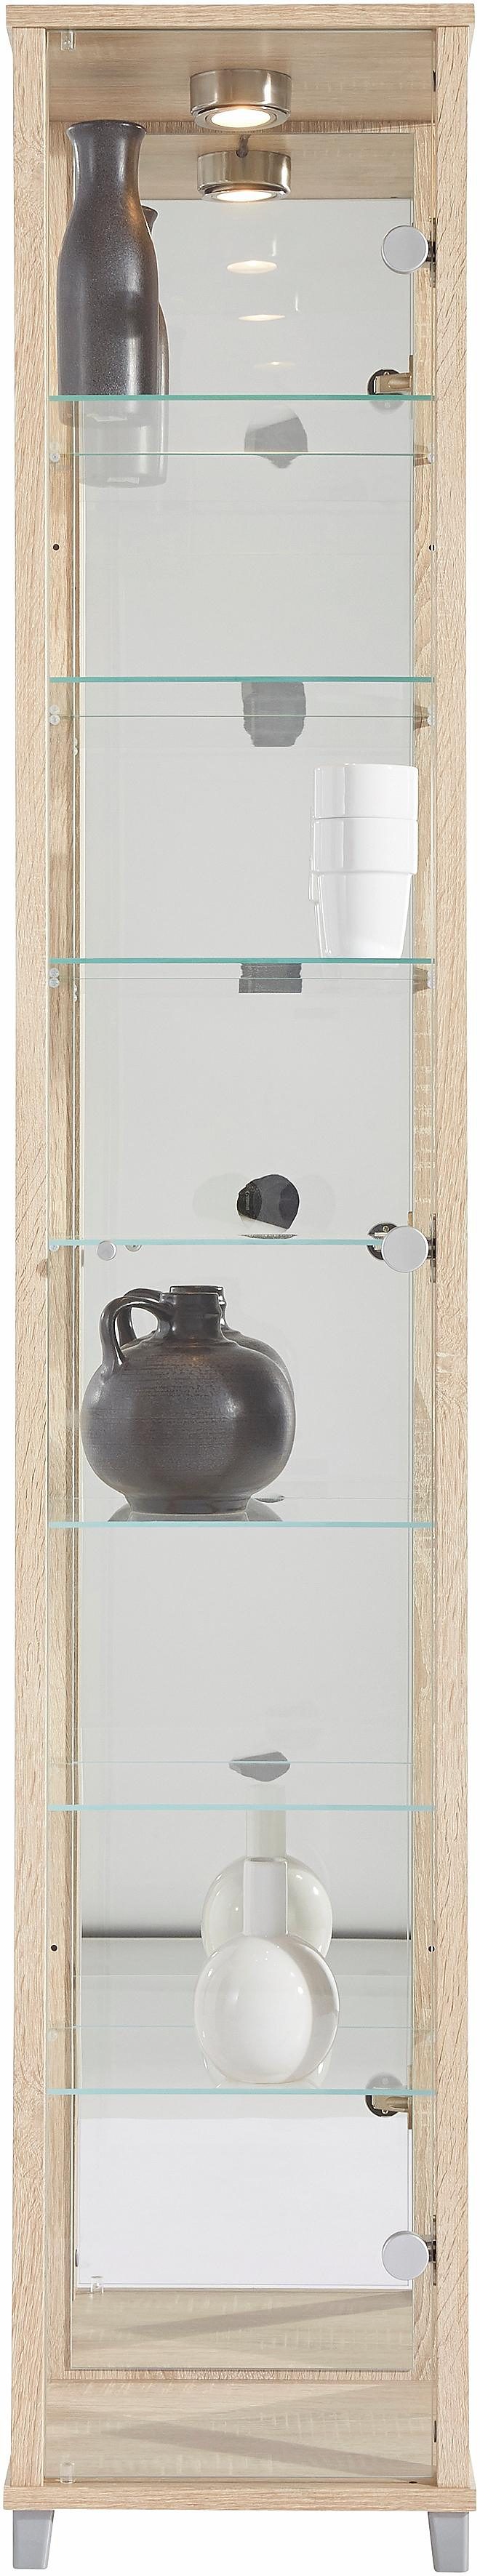 Kasten  vitrinekasten Vitrinekast met spiegelachterwand  7 glasplateaus 290482